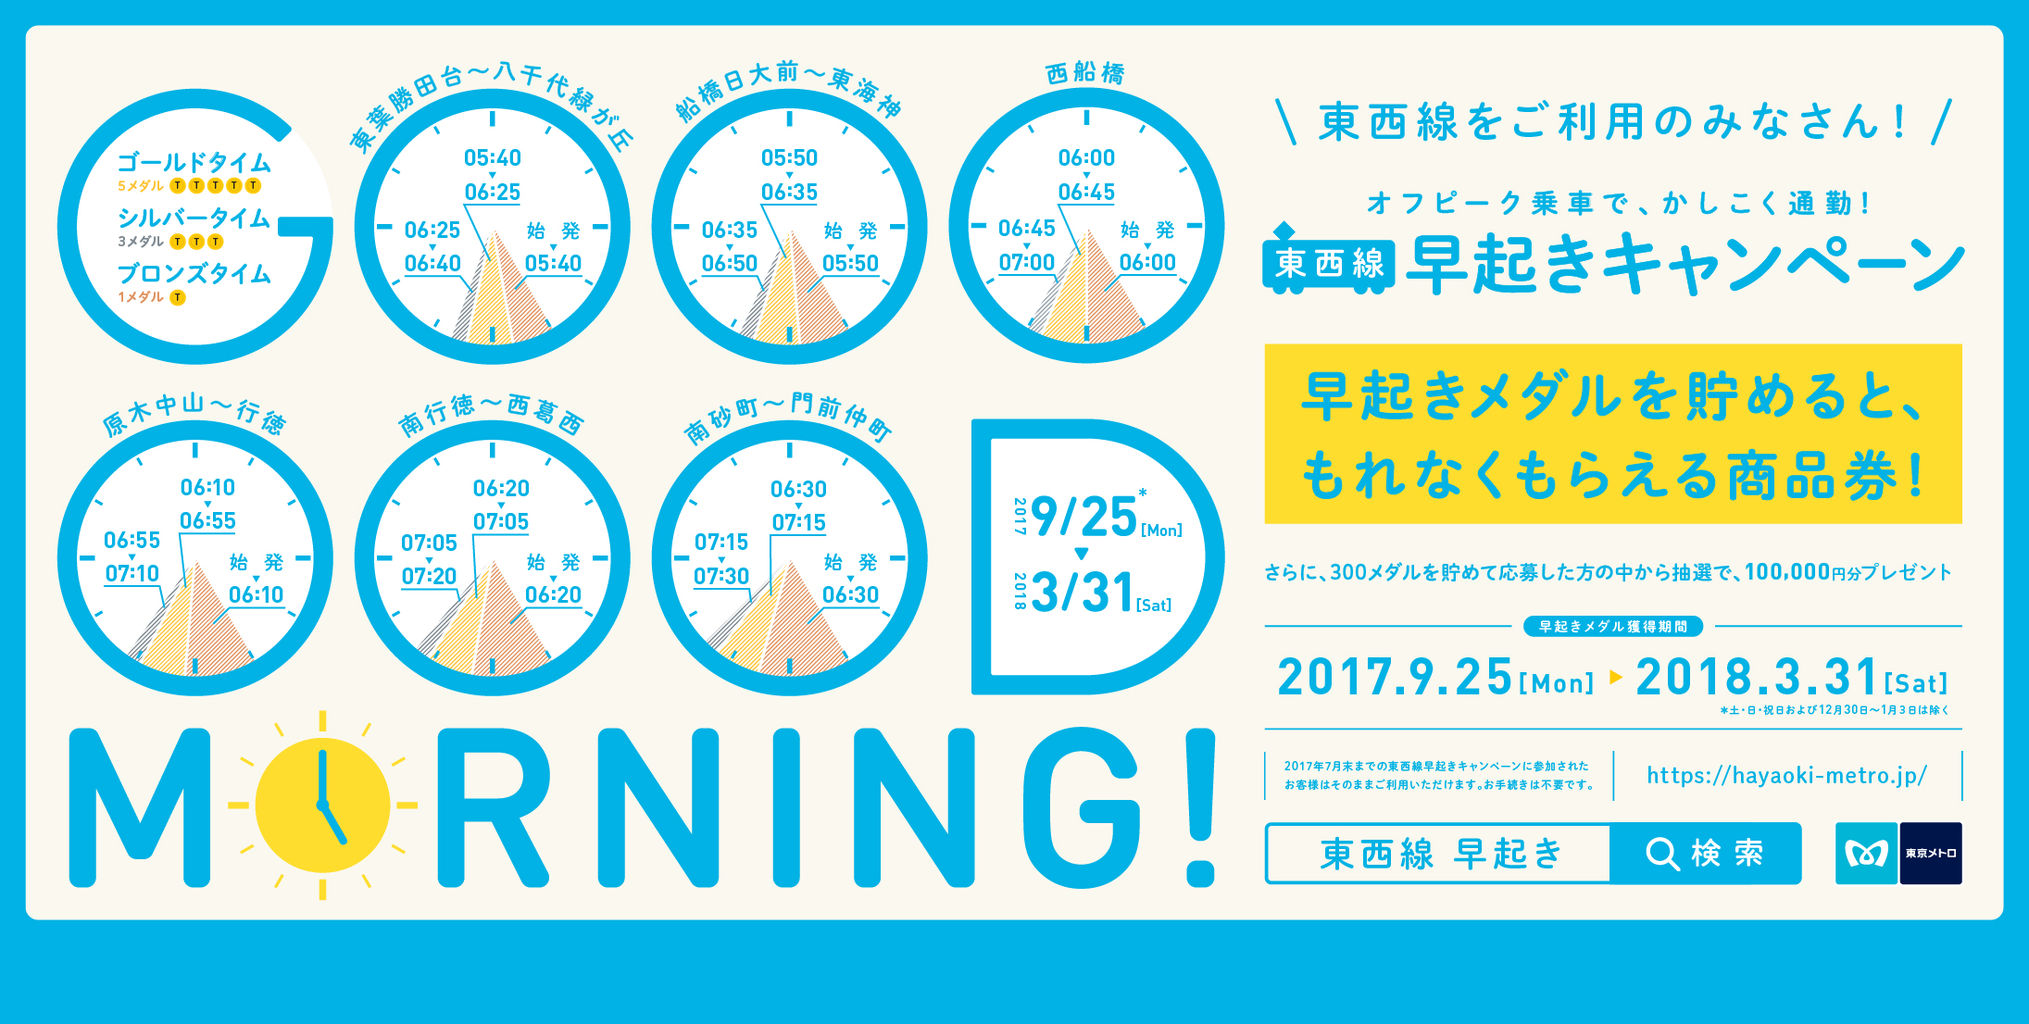 東京メトロ 東西線早起きキャンペーン を通年で実施中 イベント グッズ情報室